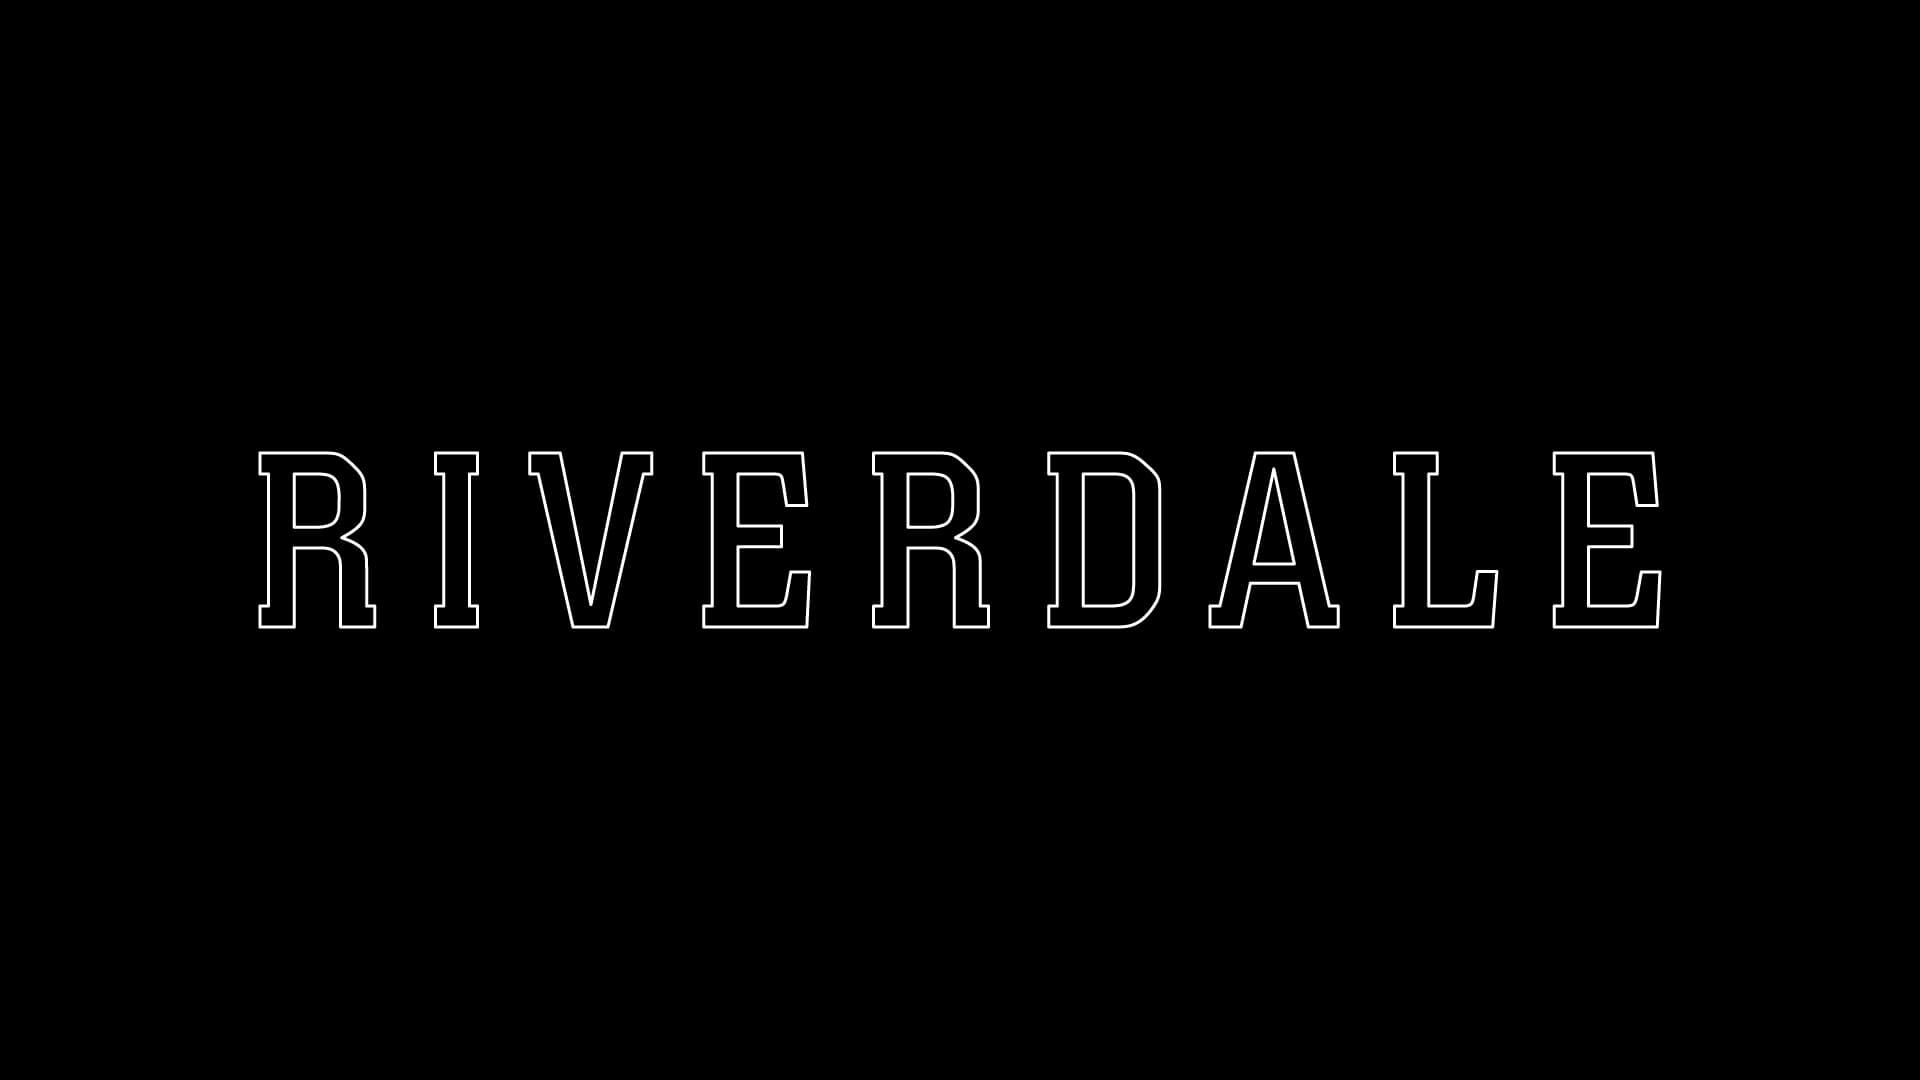 Riverdale - Season 1